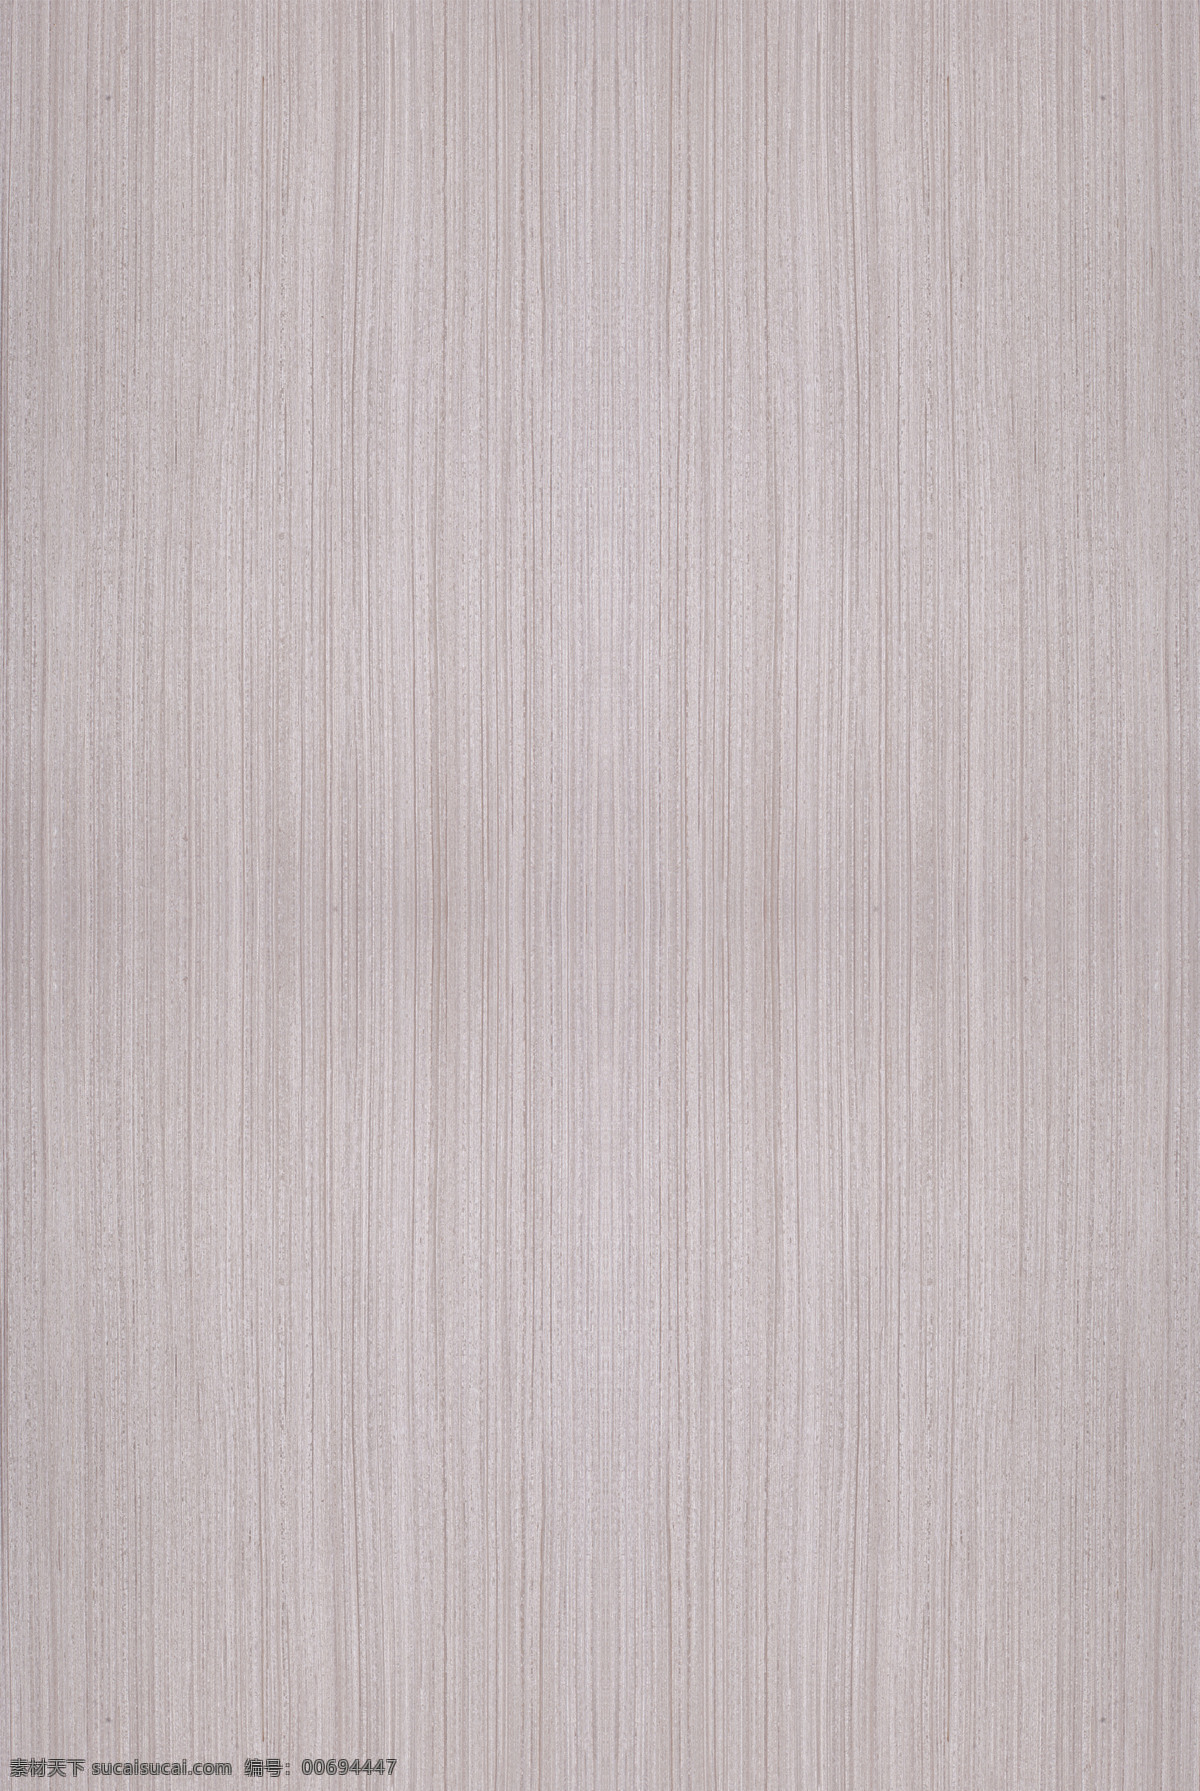 木纹贴图 银丝橡木 木皮贴图 木纹 高清贴图 3d贴图 无缝拼图 uv板 木饰面板 3d设计 其他模型